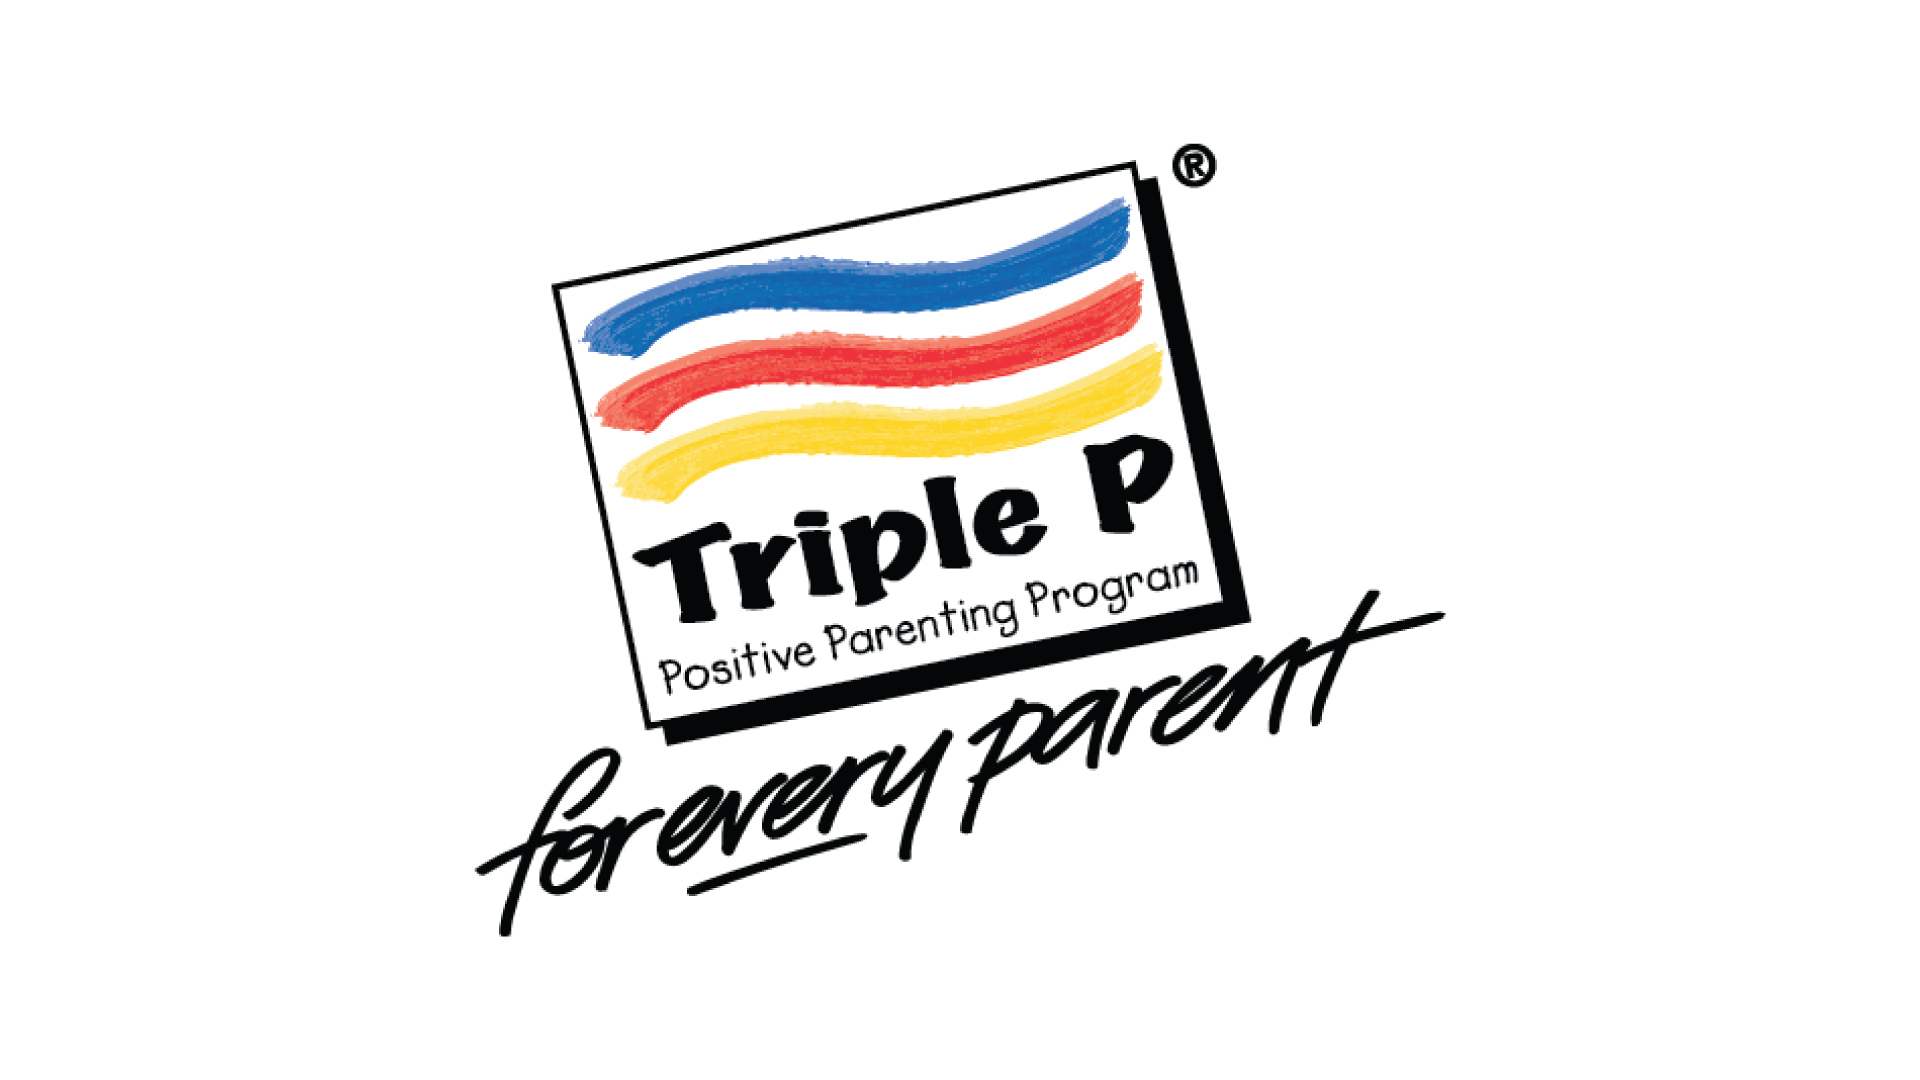 Triple P program logo